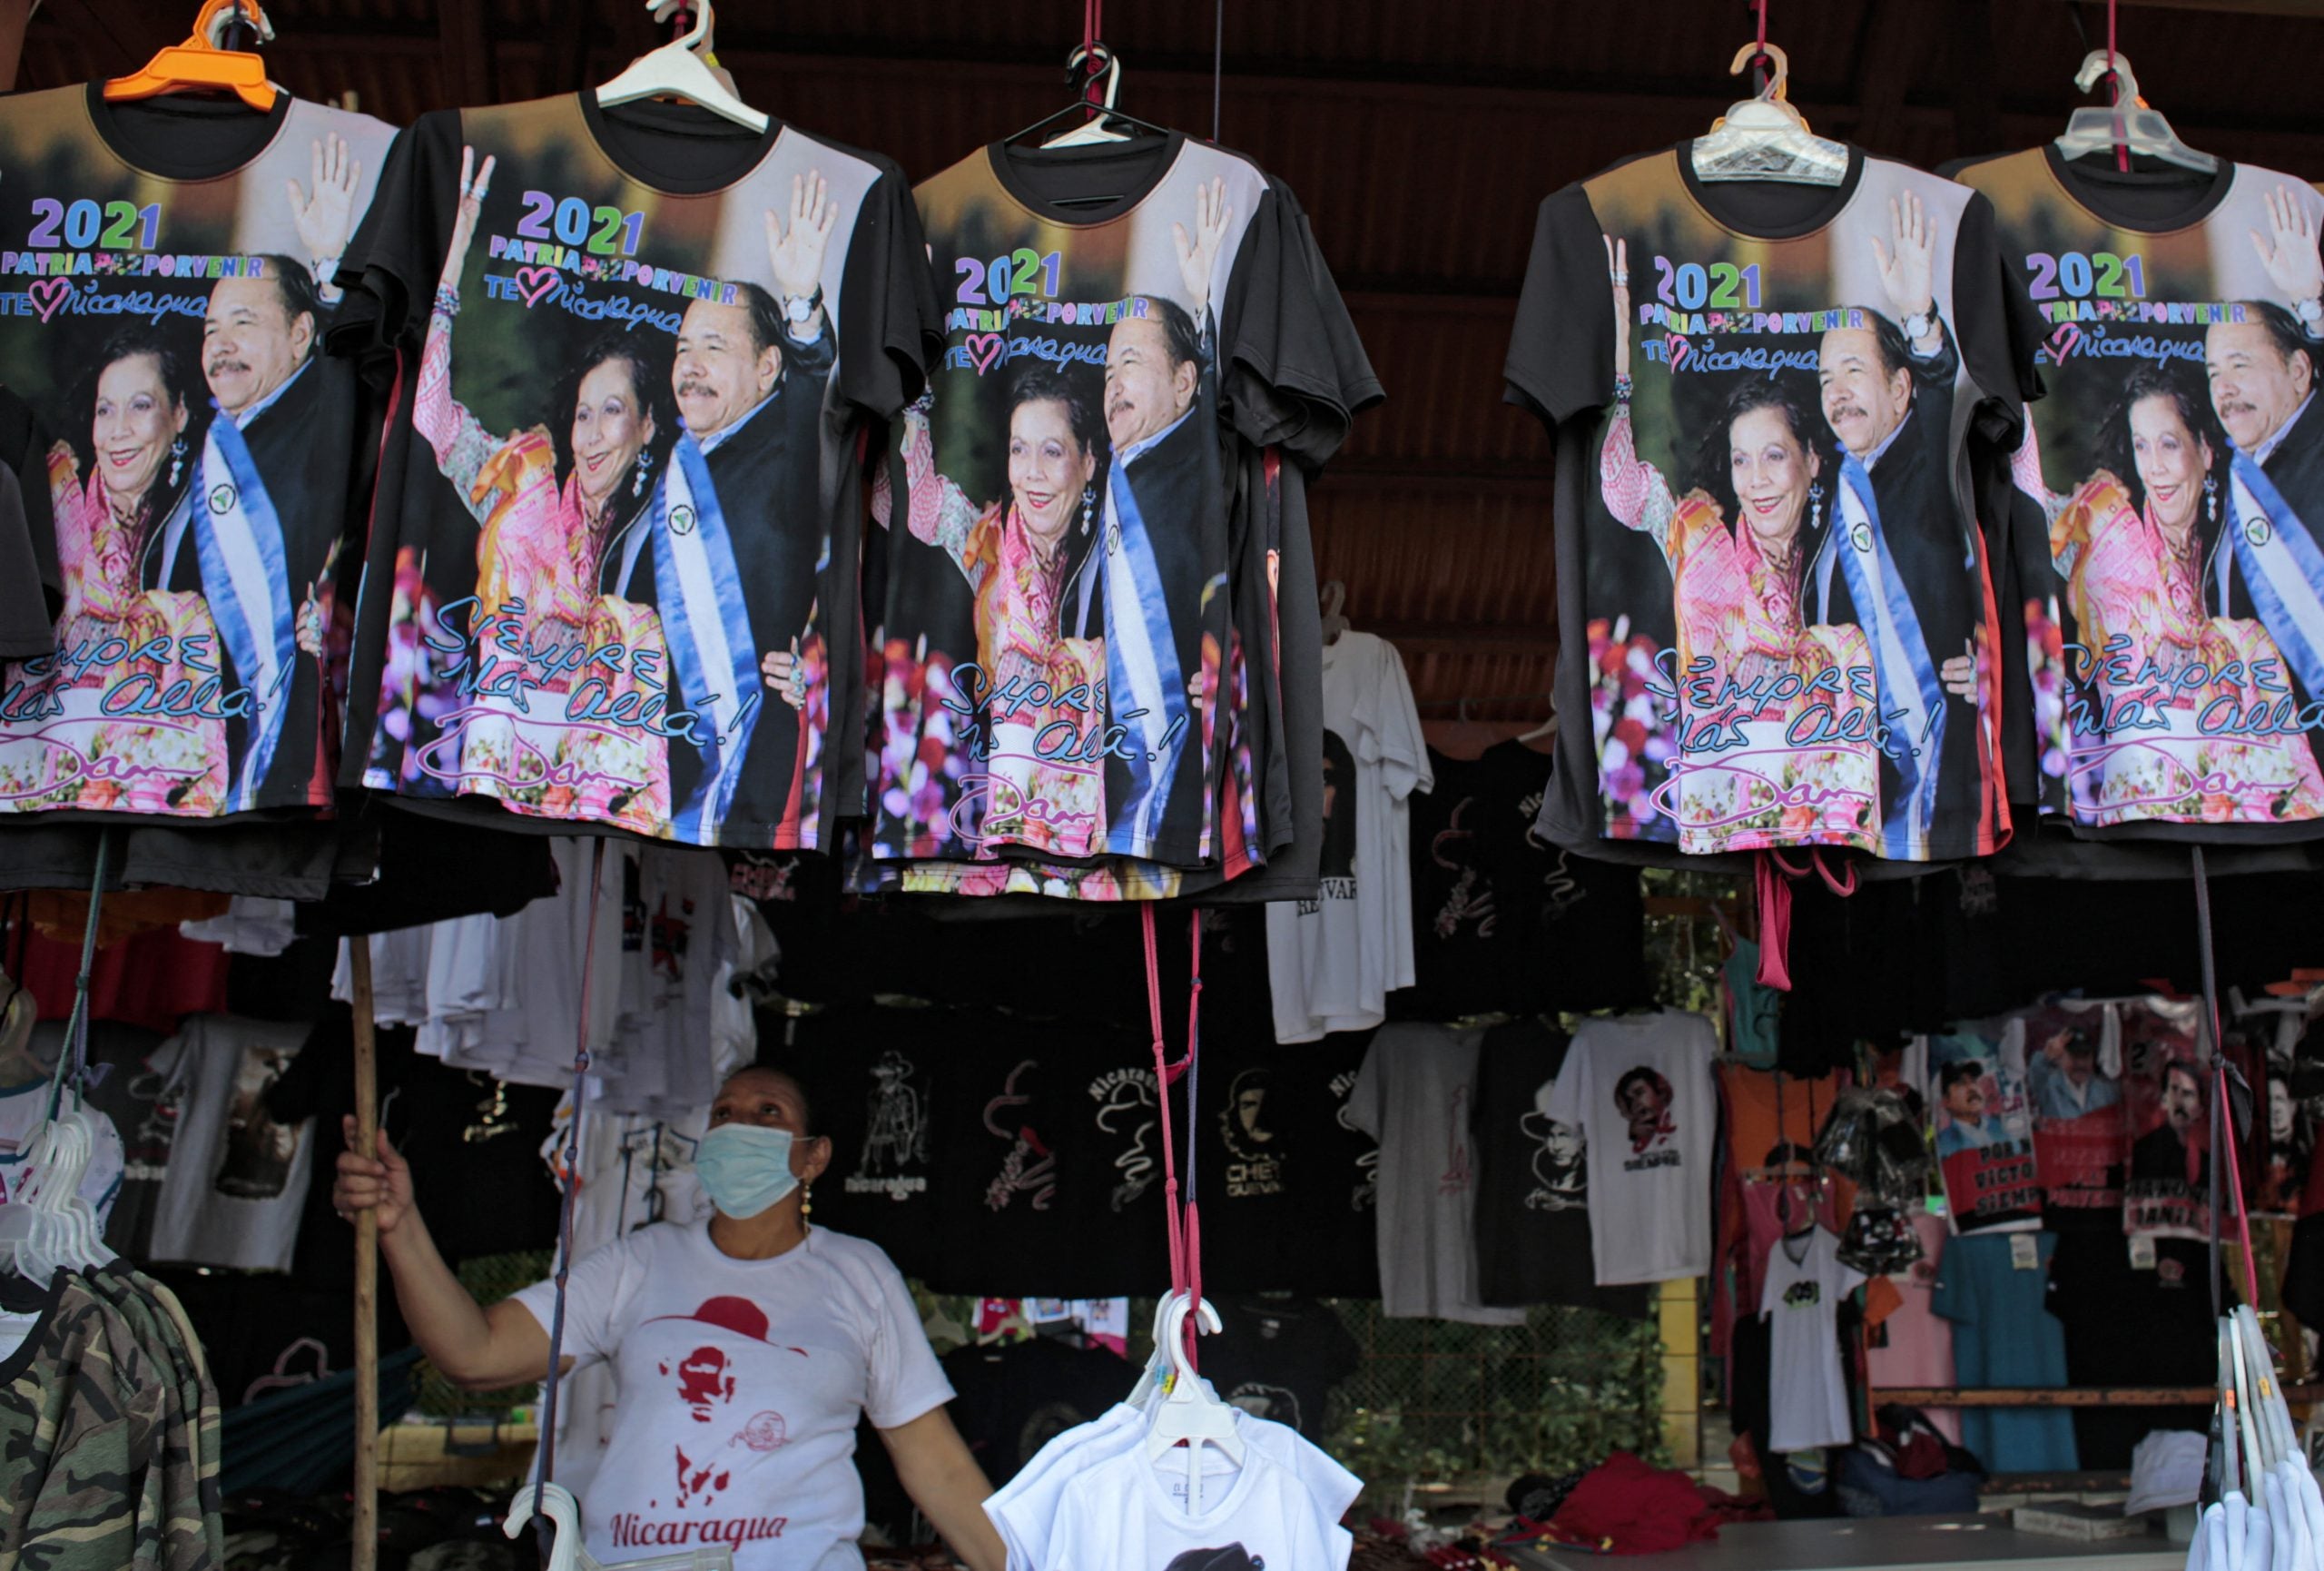 Un vendedor vende camisetas con la imagen del presidente de Nicaragua Daniel Ortega y su esposa.